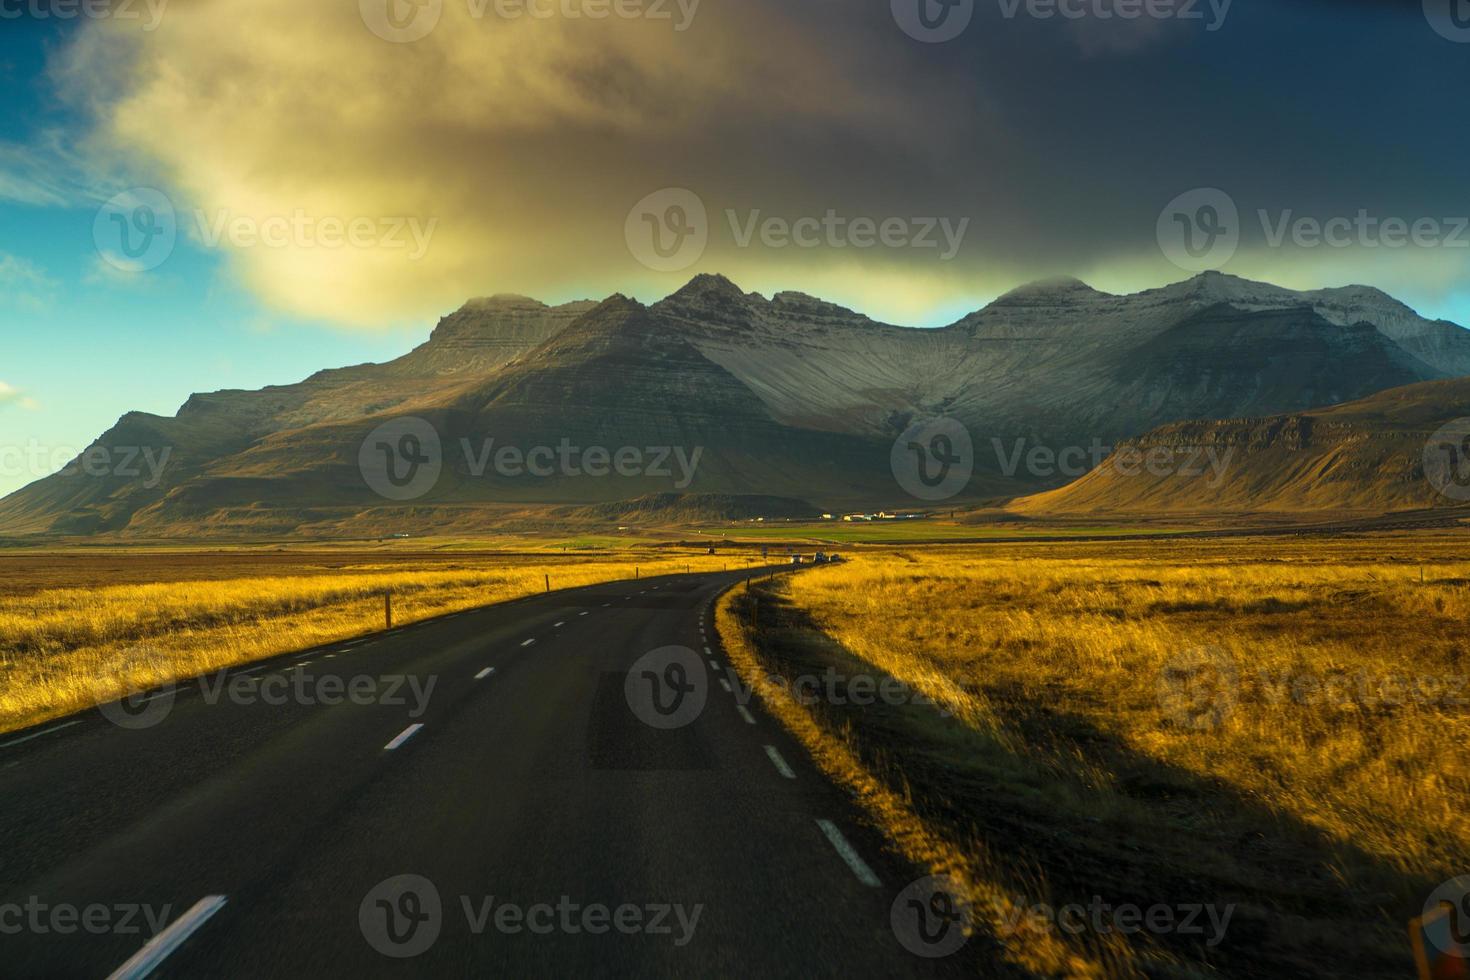 route 1 ou rocade, ou hringvegur, une route nationale qui fait le tour de l'islande et relie la plupart des régions habitées du pays photo